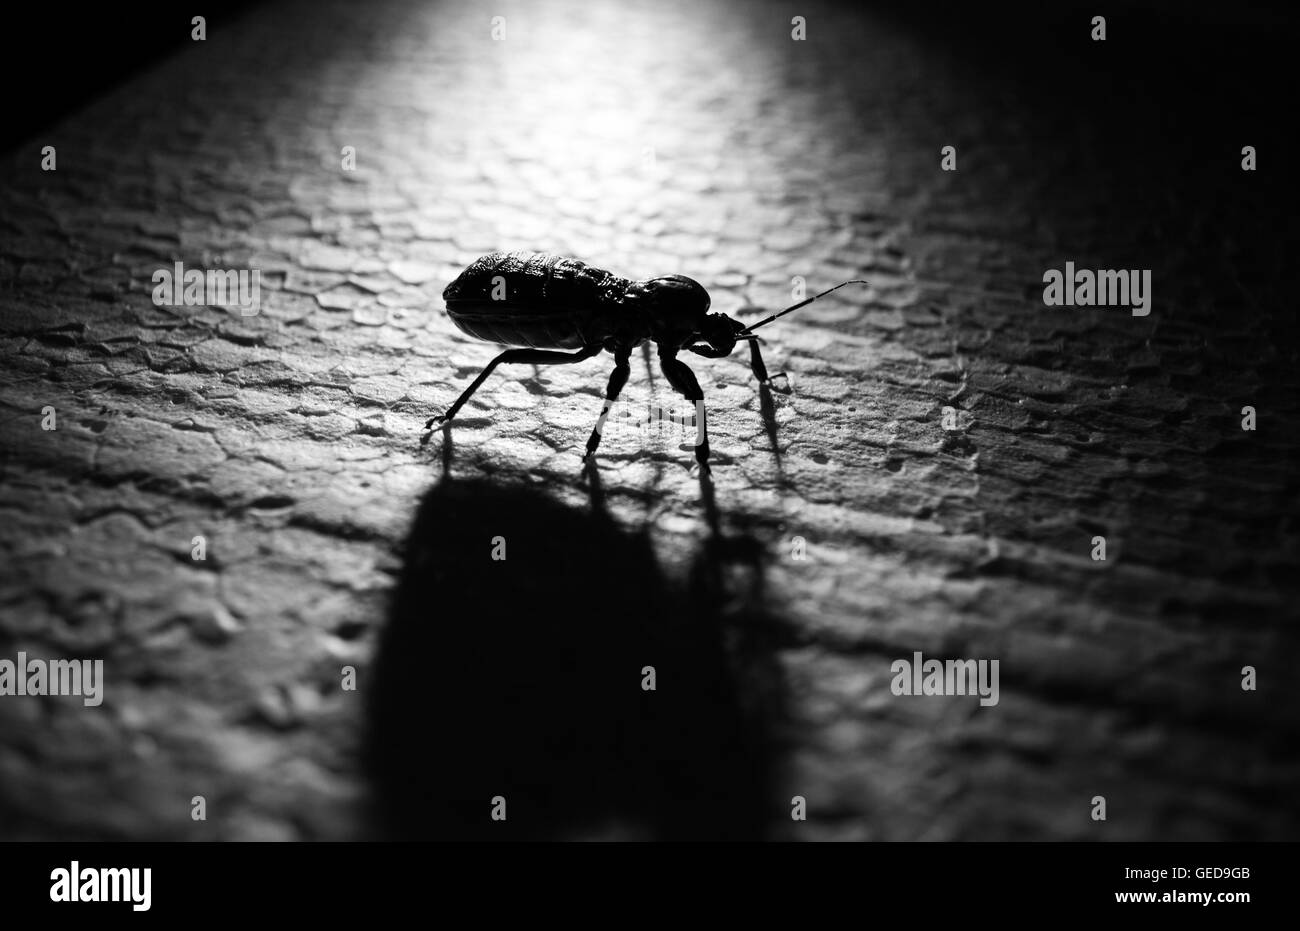 Bug unders effets de lumière de l'ombre en noir et blanc Banque D'Images